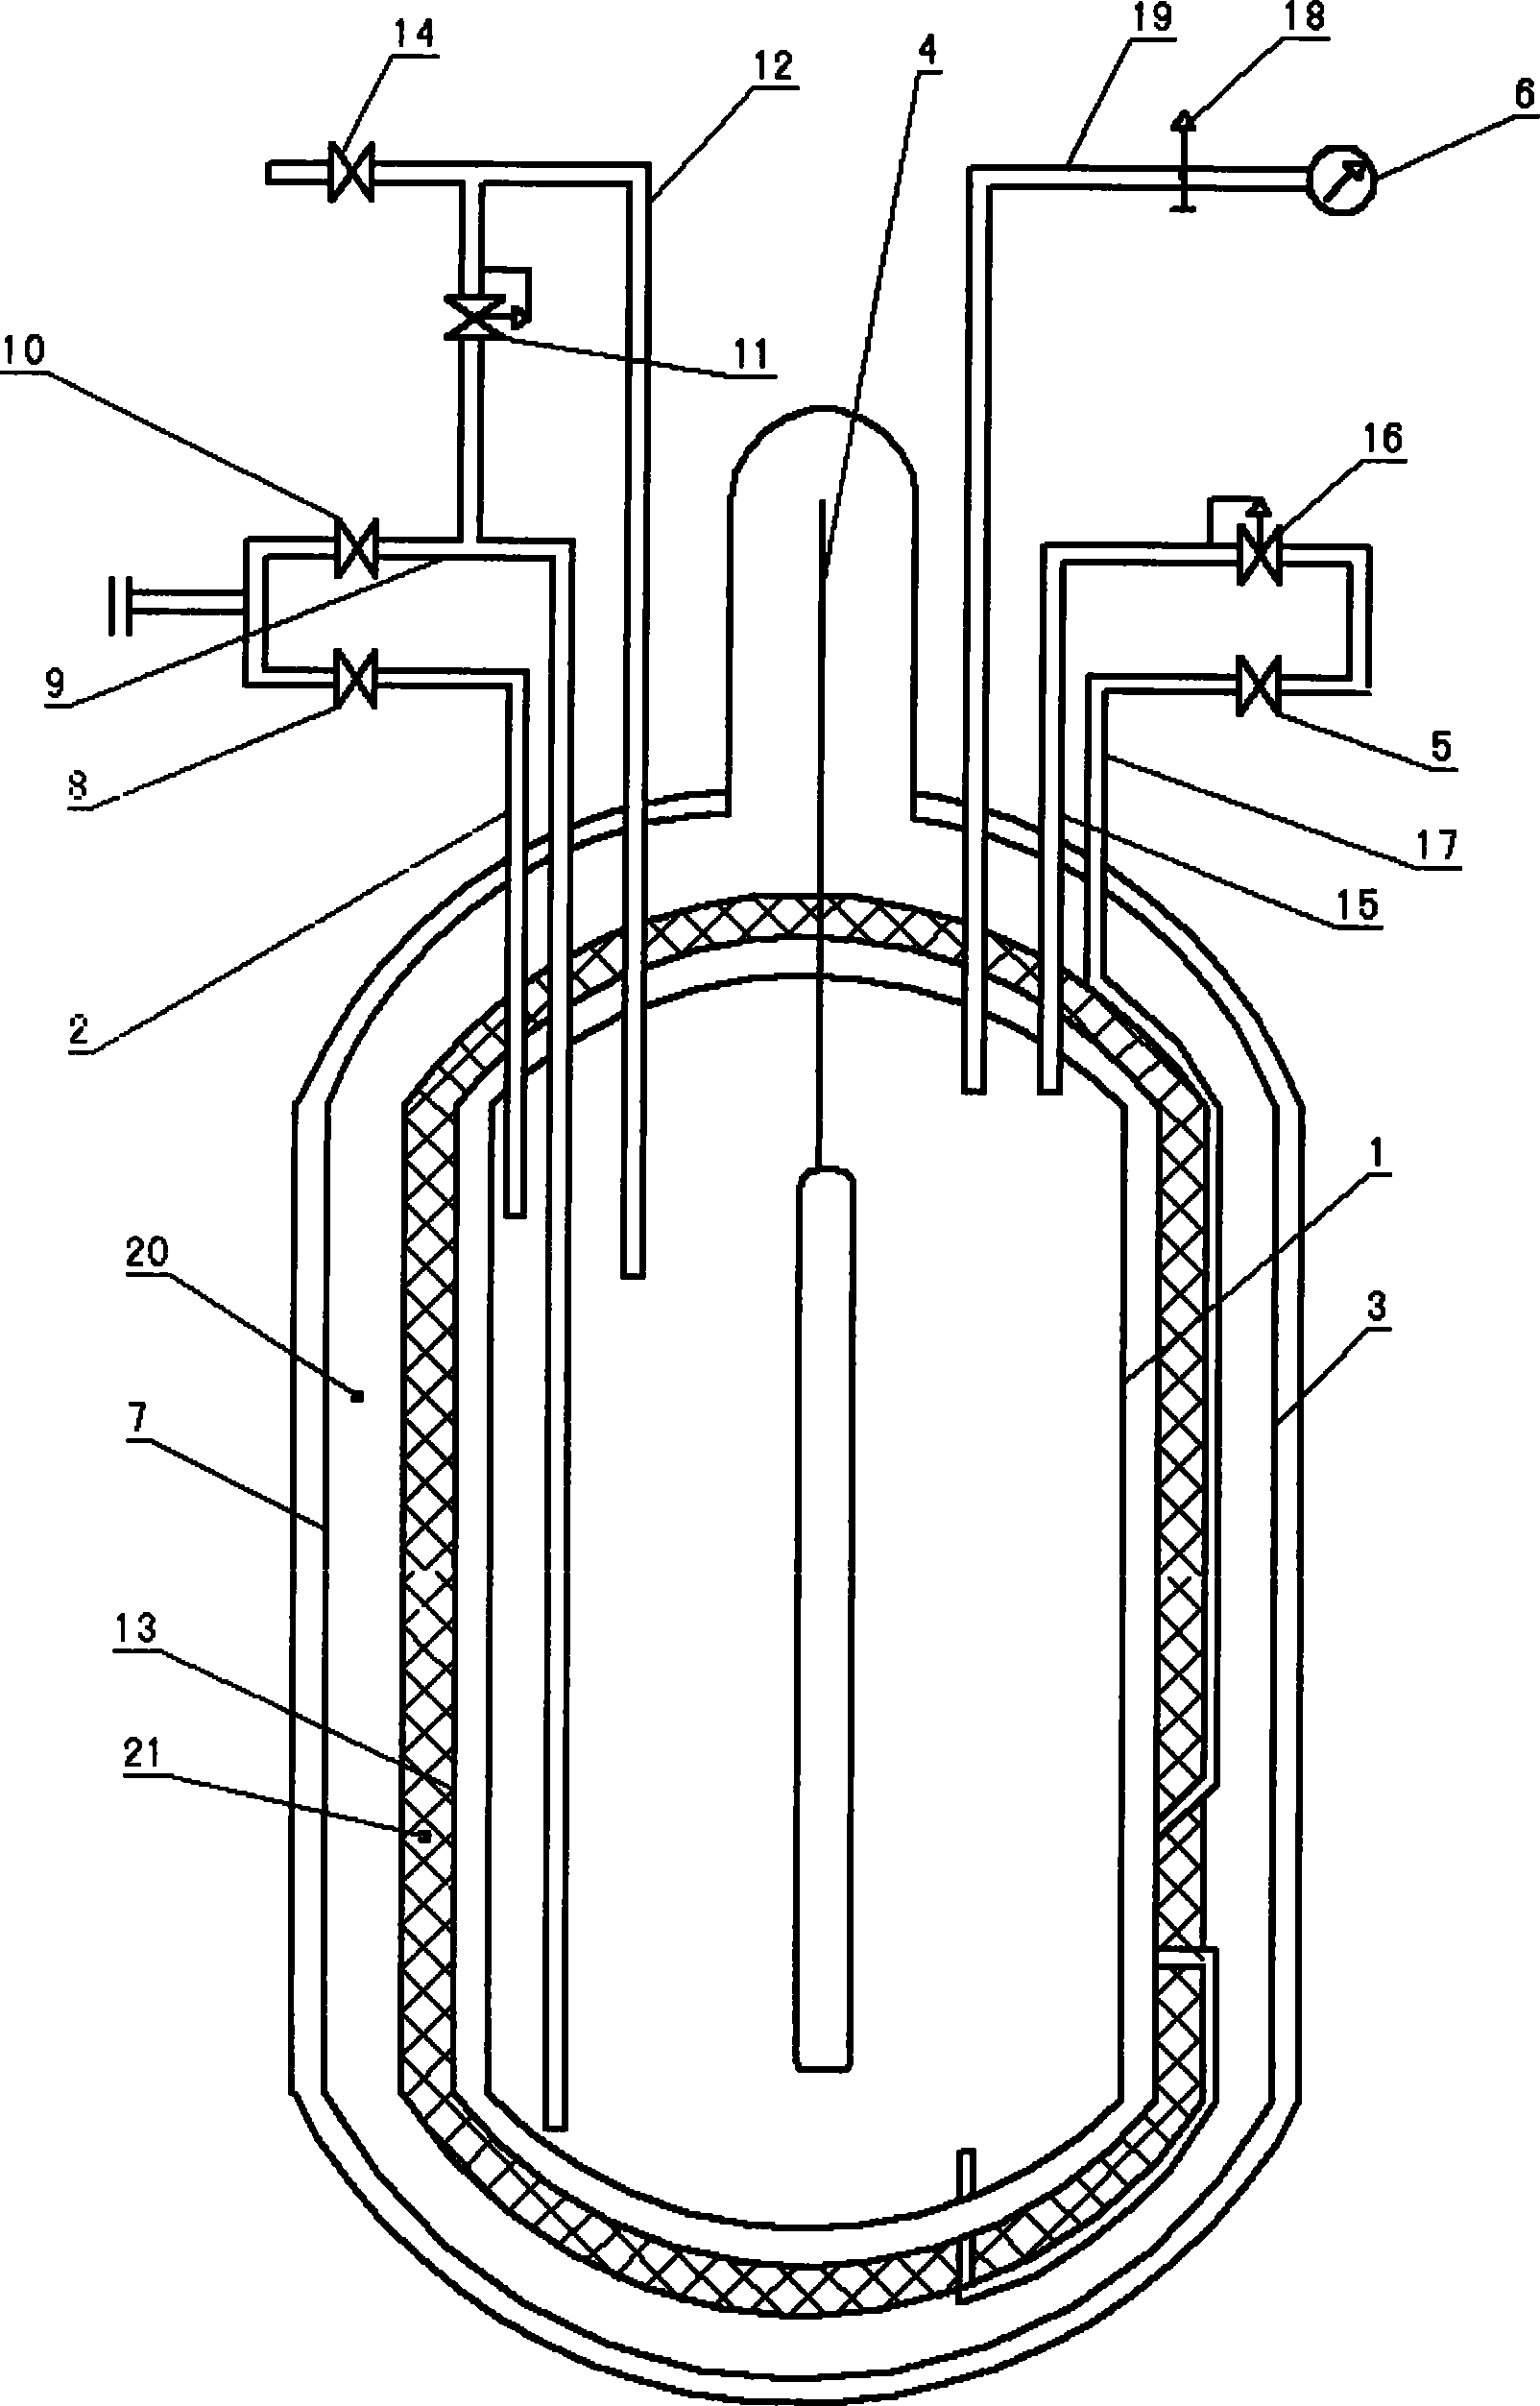 Welded adiabatic gas cylinder